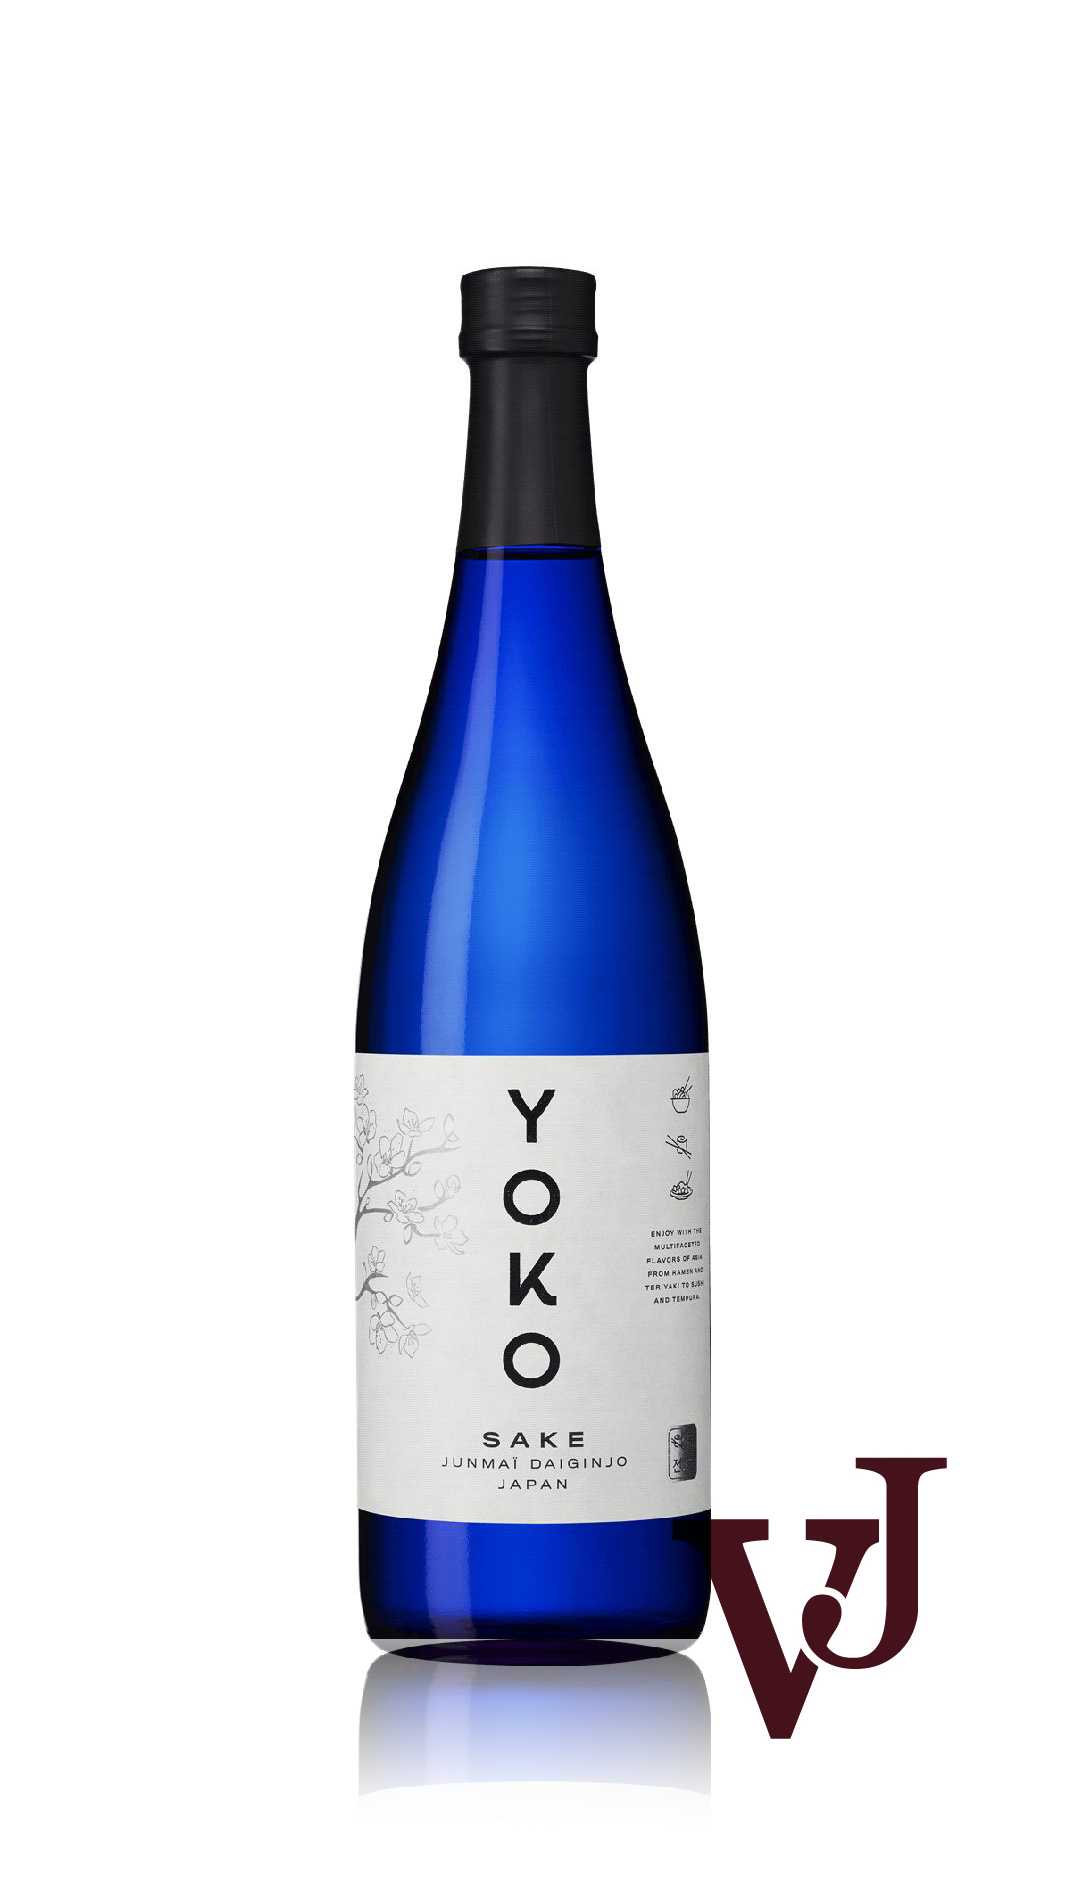 Övrigt vin - YOKO Sake Junmai Daiginjo artikel nummer 5311801 från producenten Altia PLC från området Japan